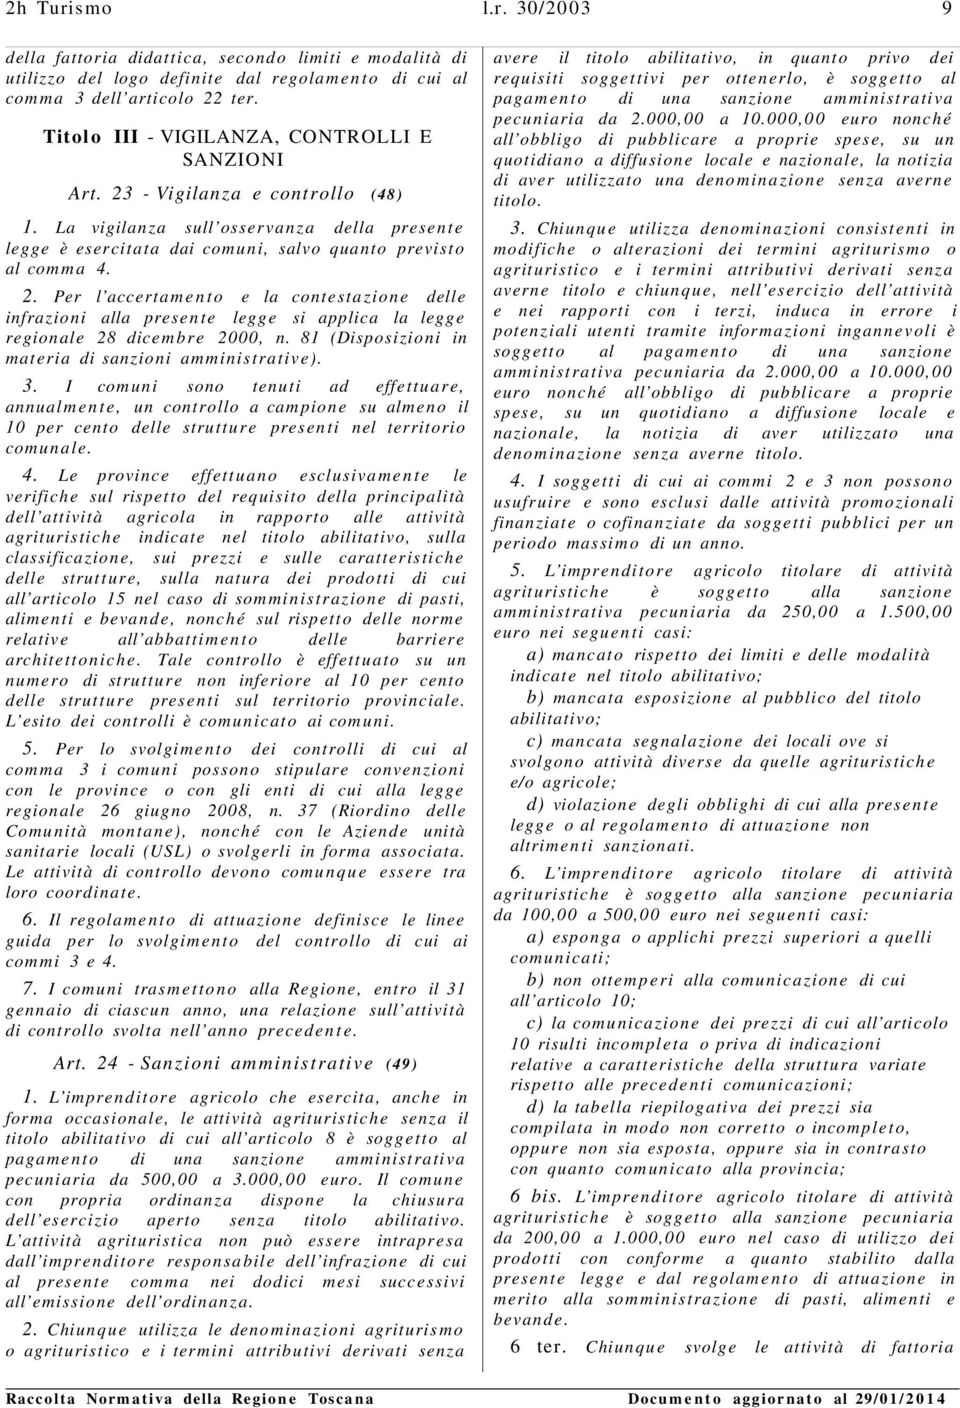 81 (Disposizioni in materia di sanzioni amministrative). 3.